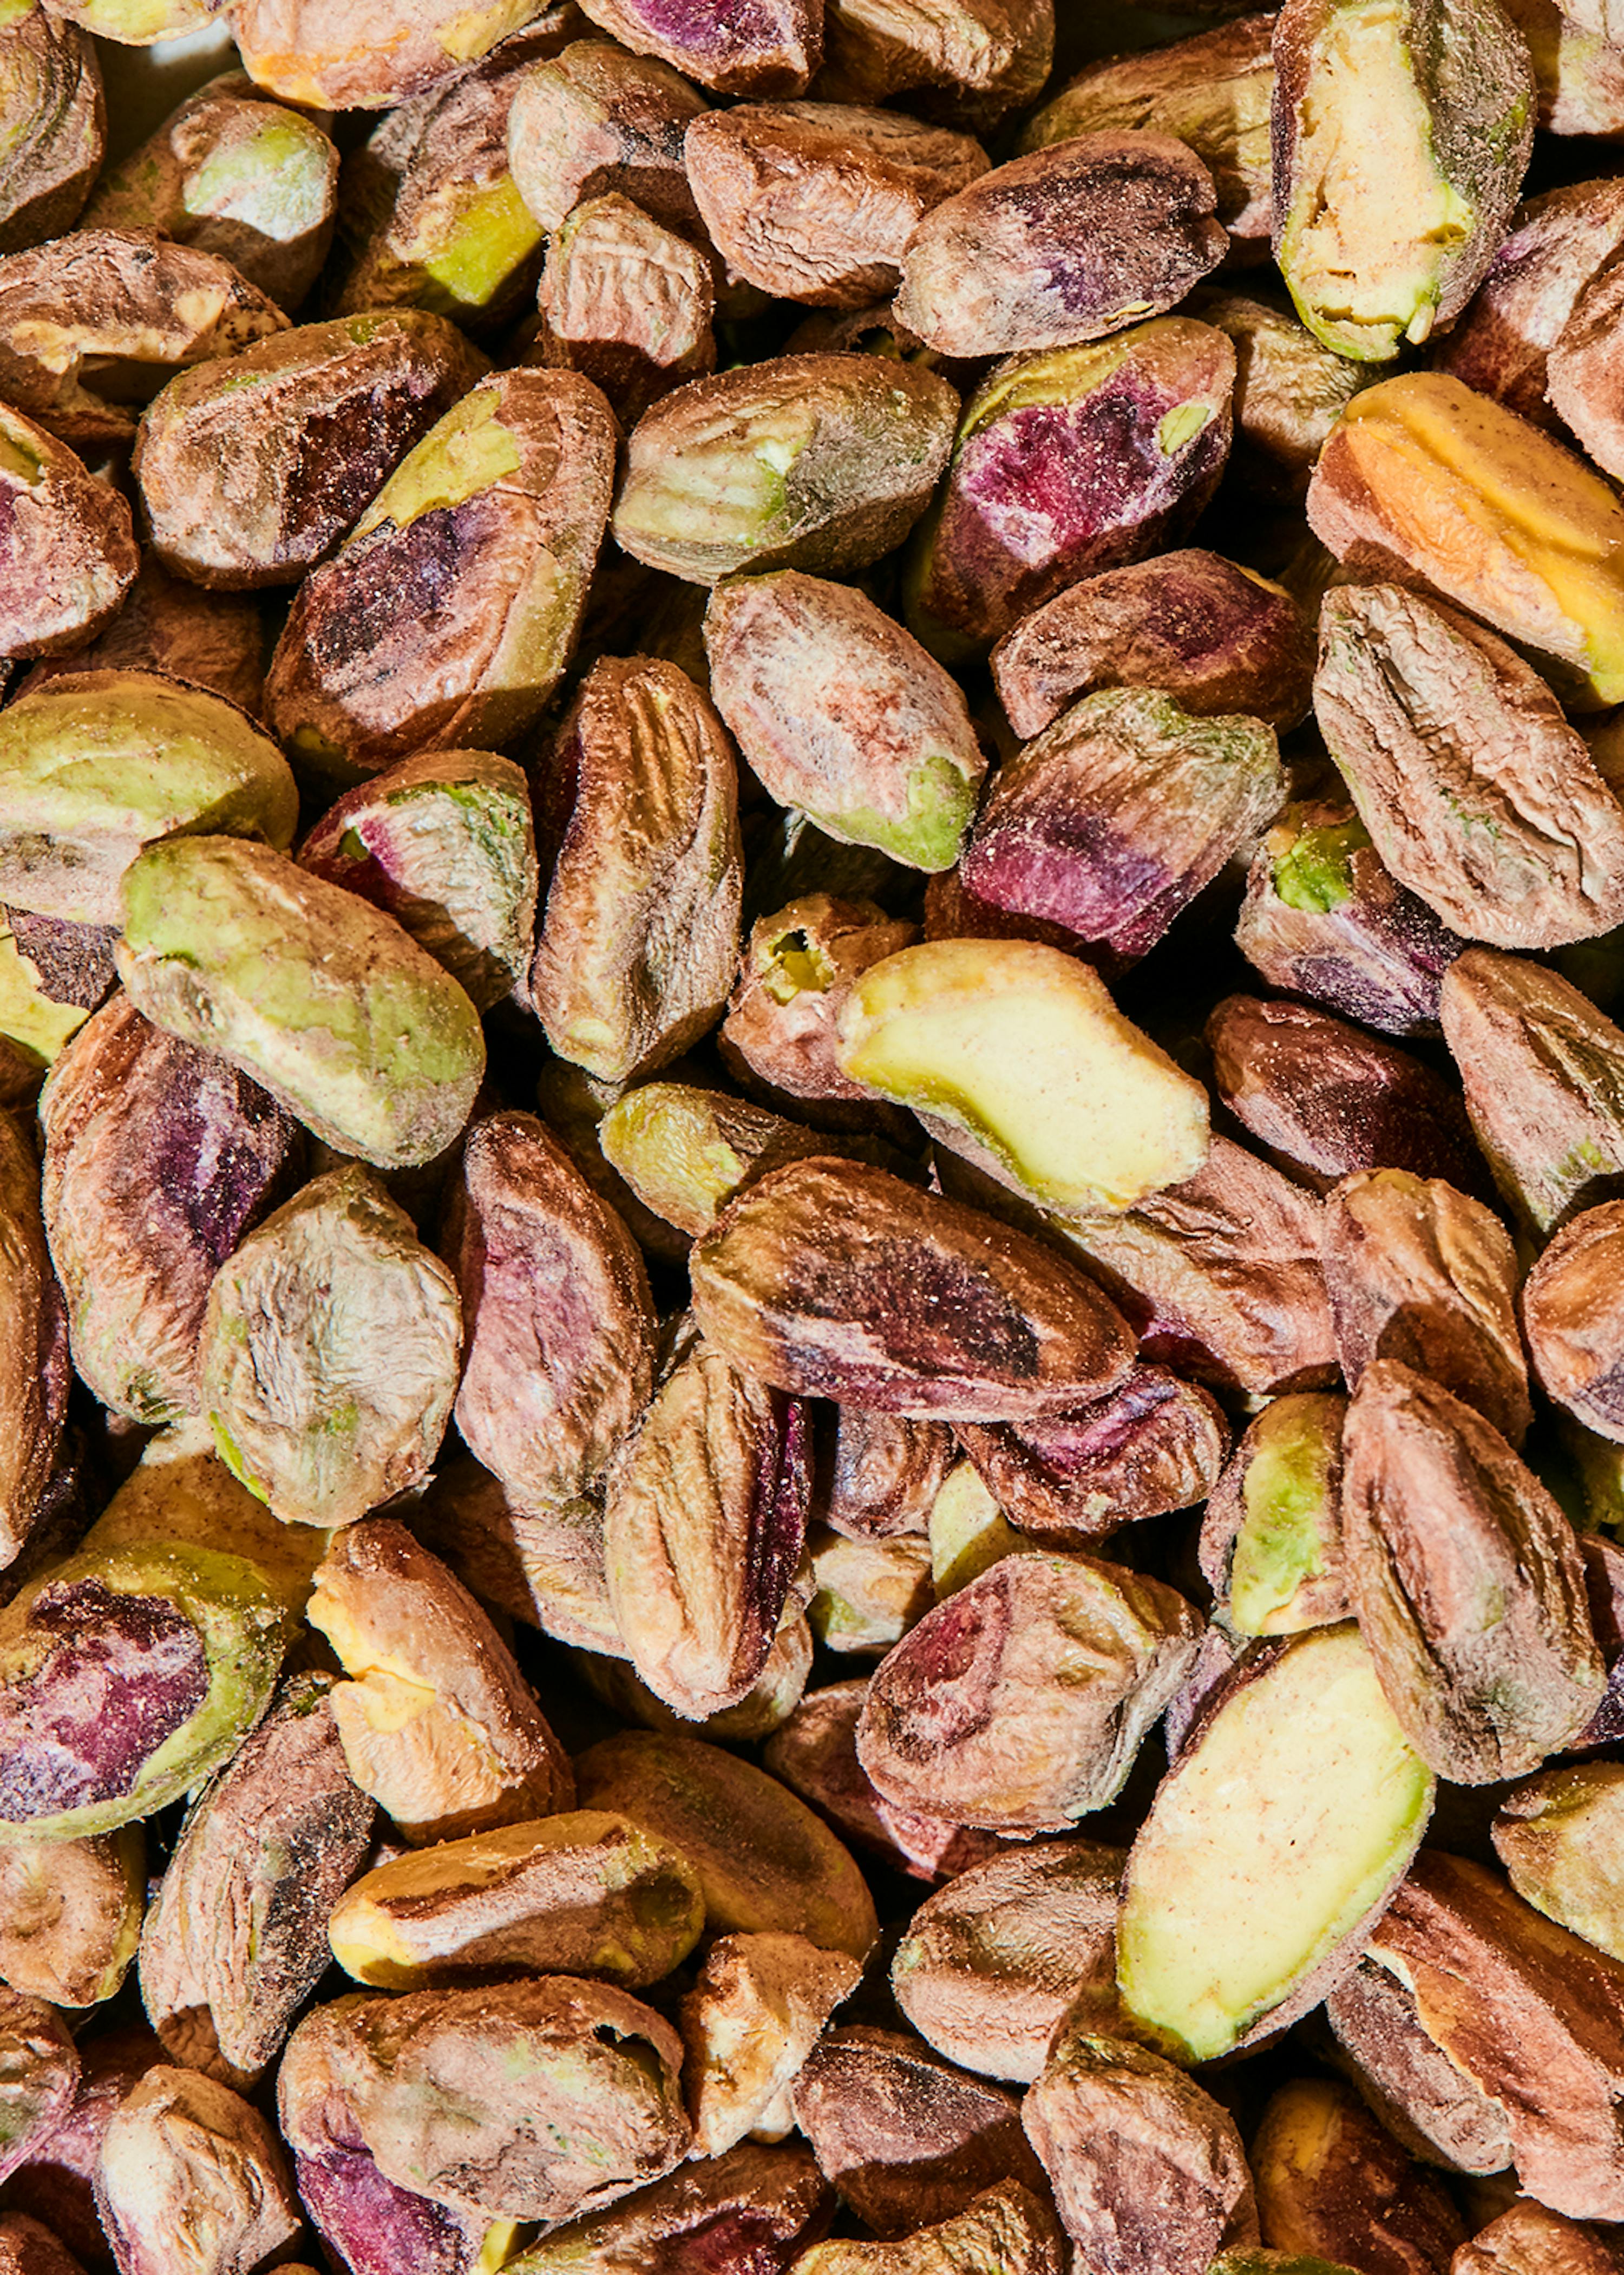 Pistaches décortiquées (250g), non torréfiées, non salées, pistaches  décortiquées 100% pures et naturelles : : Épicerie